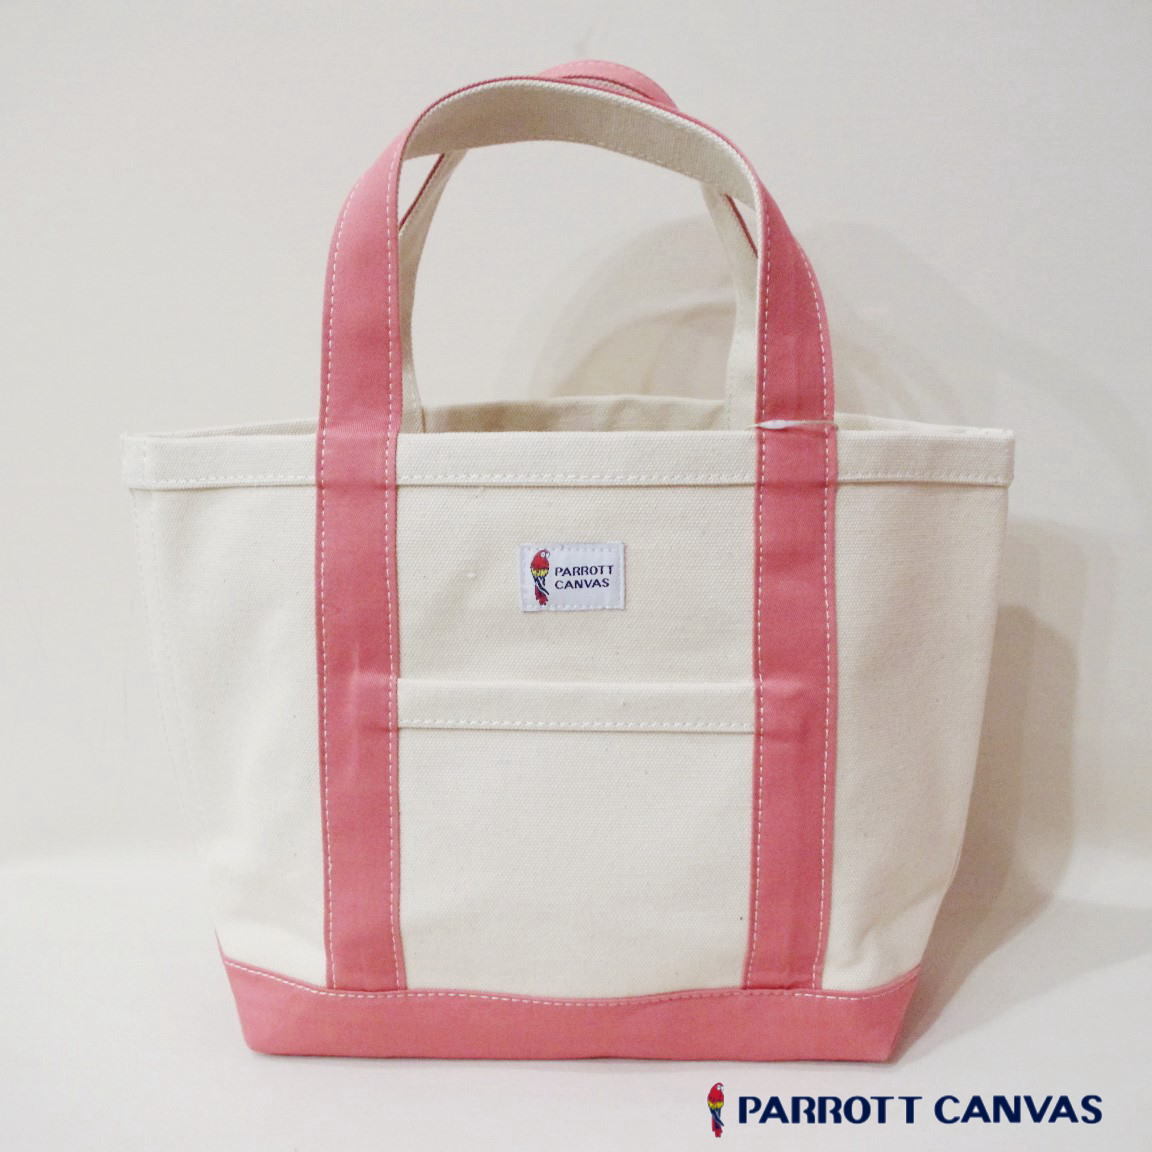 PARROTT CANVAS パロットキャンバス スモールトートバッグ グリーンビルクラシックトート 鞄 BAG S ピンク 新品 未使用